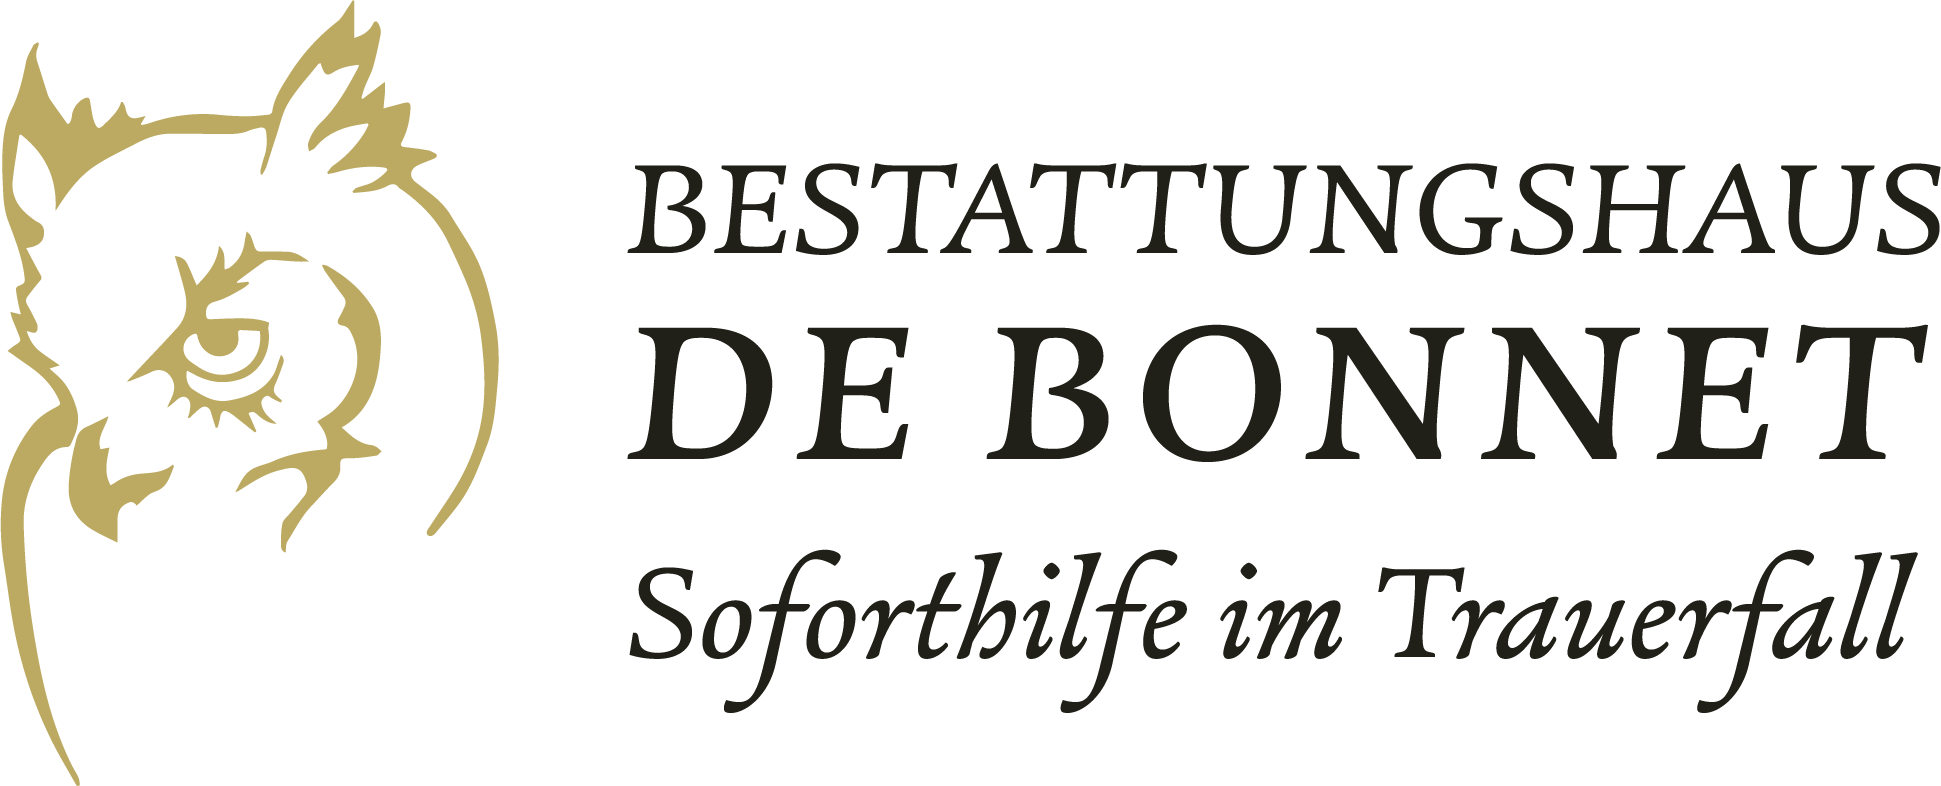 Bestattungshaus DeBonnet